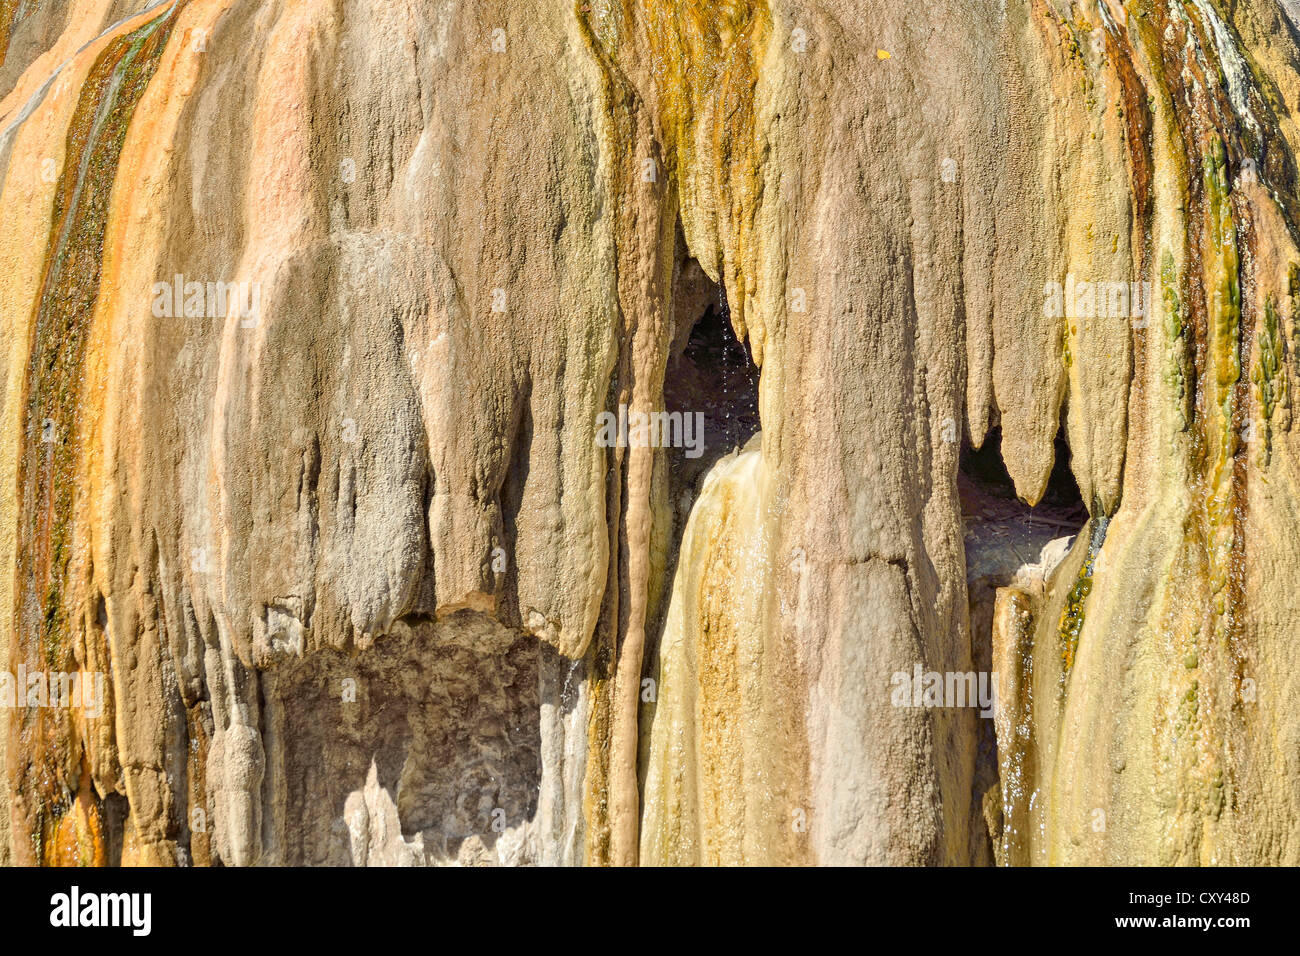 Los sedimentos de sinterización, Tepee Fountain, Thermopolis, Wyoming, EE.UU. Foto de stock